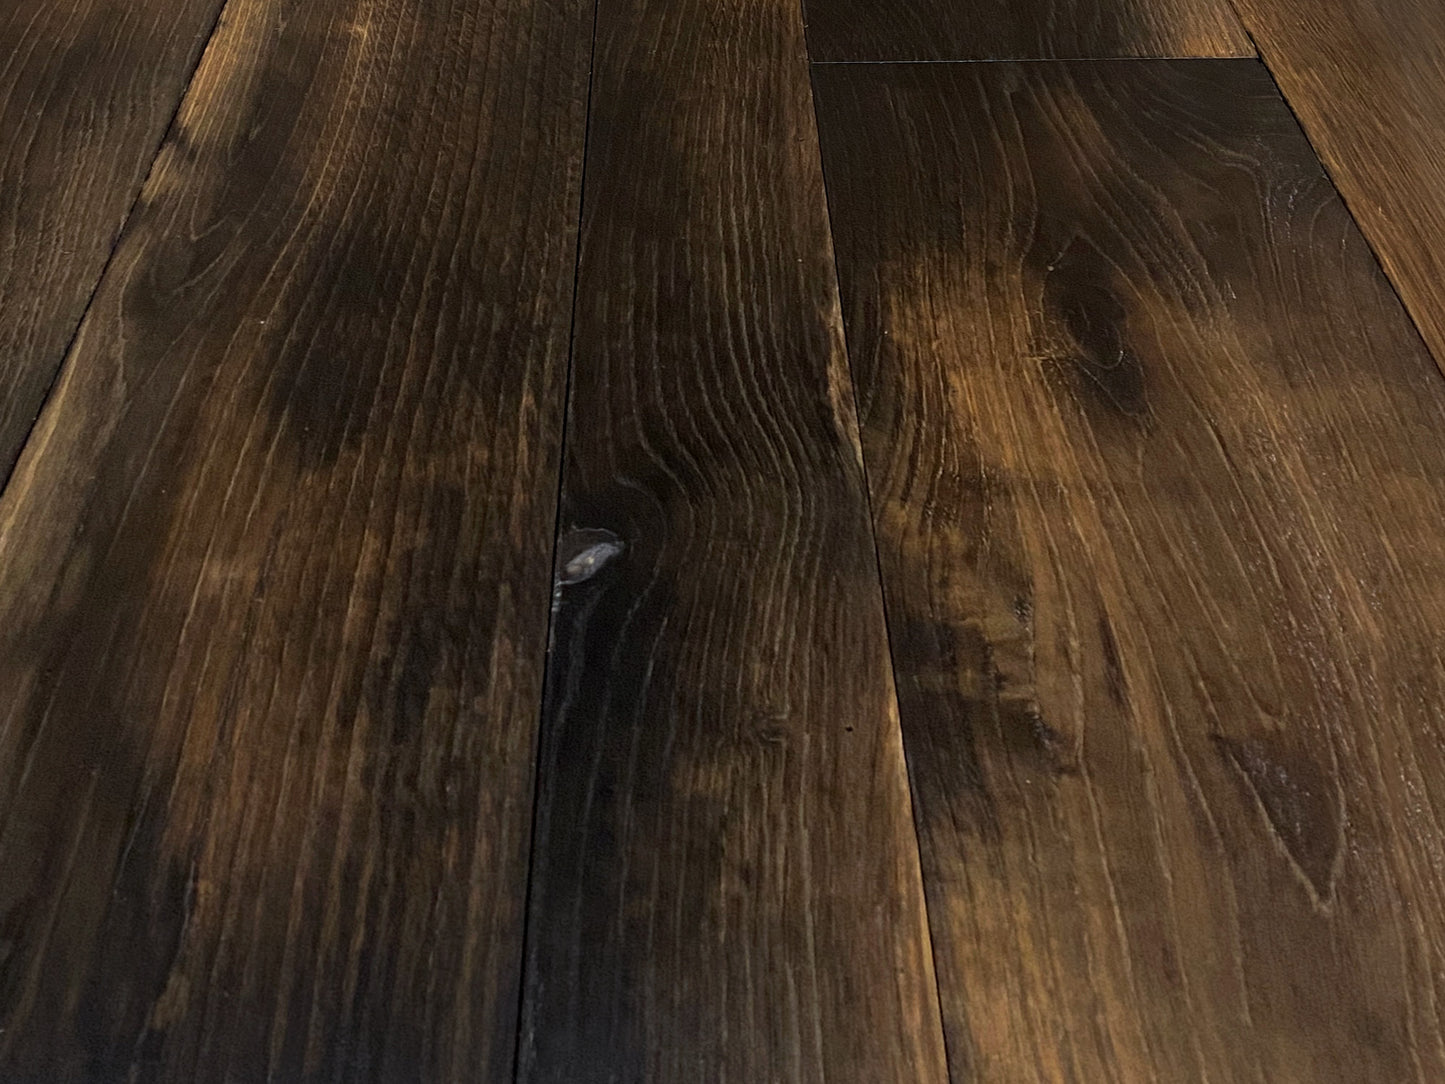 Reclaimed Heritage Oak | Old Tobacco Factory Floor | Reclaimed Wood Flooring